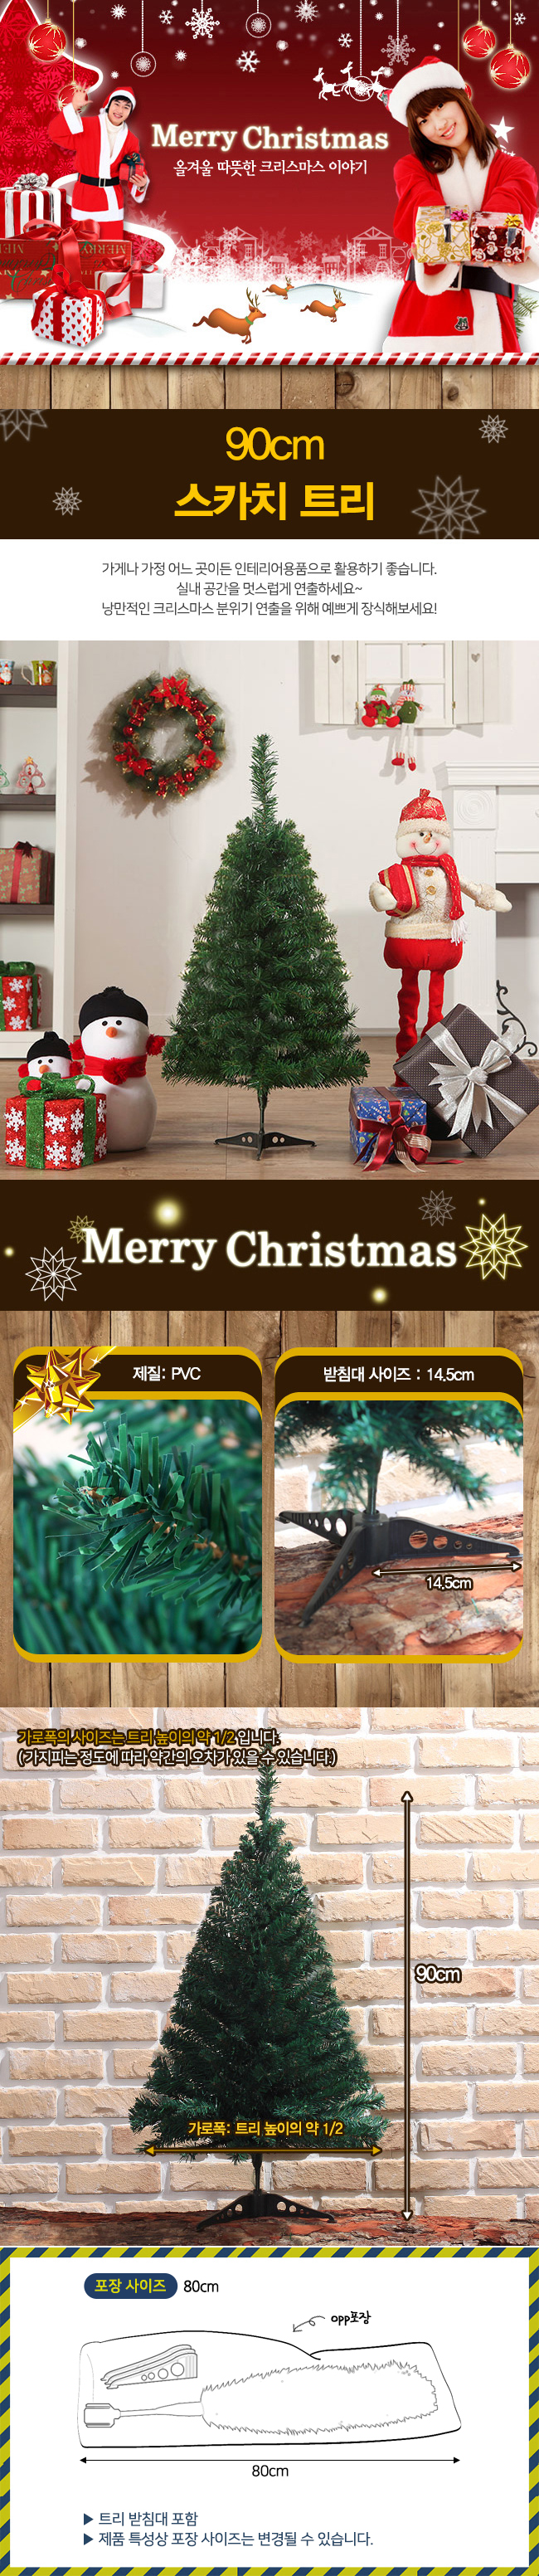 90cm 스카치 크리스마스 트리나무/프론트 장식